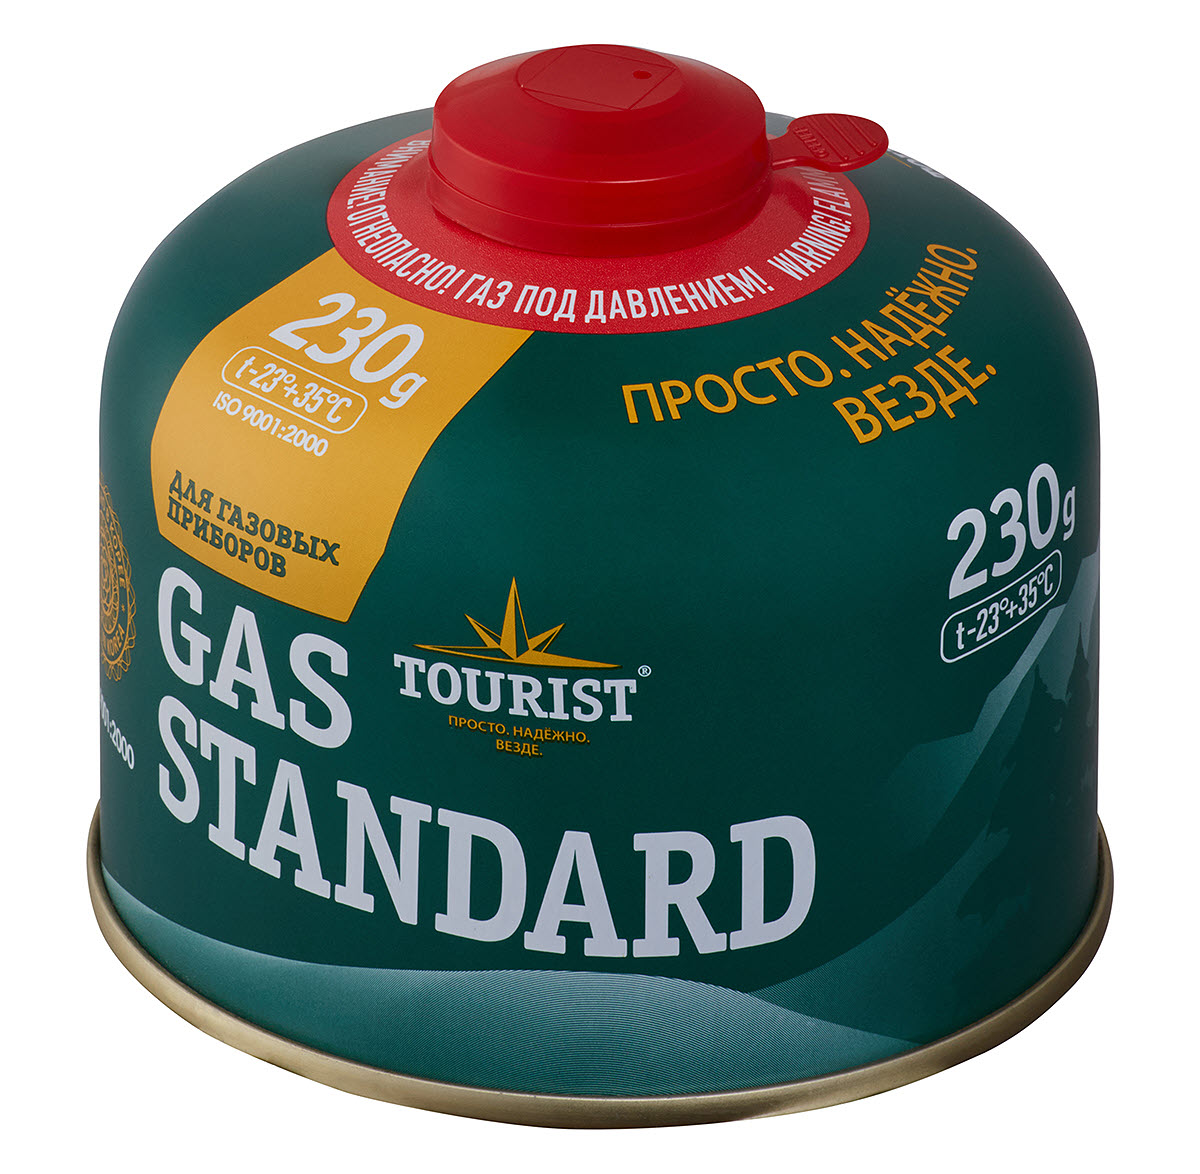 Баллон газовый Tourist Gas Standard (TBR-230) для портативных приборов - резьбовой